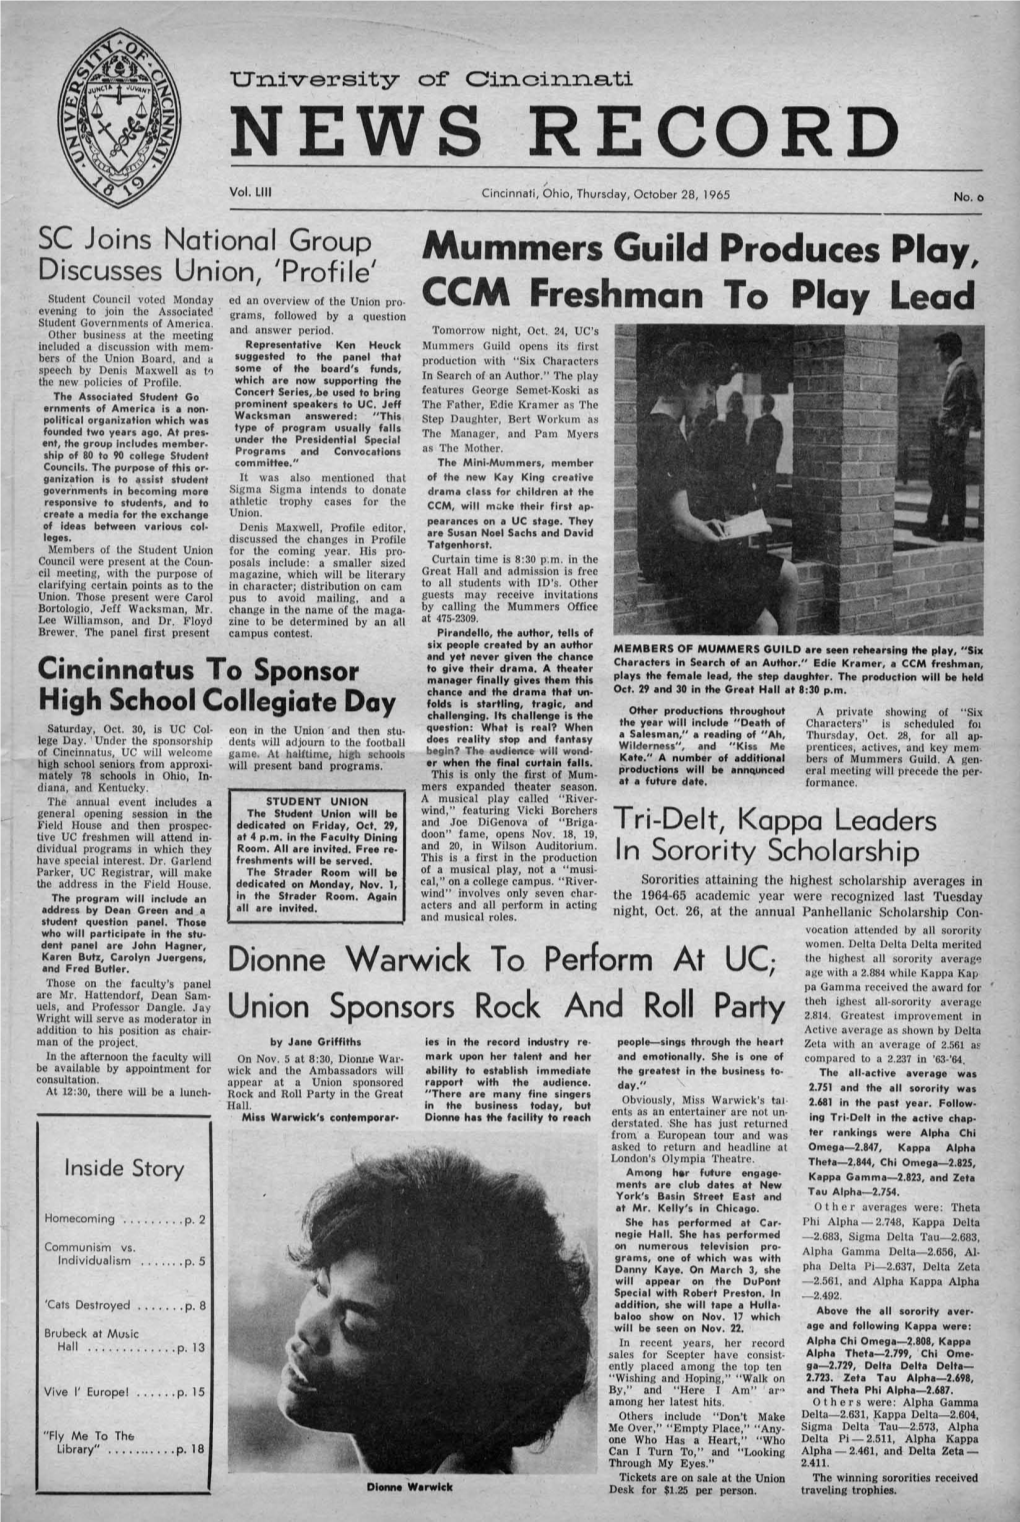 University of Cincinnati News Record. Thursday, October 28, 1965. Vol